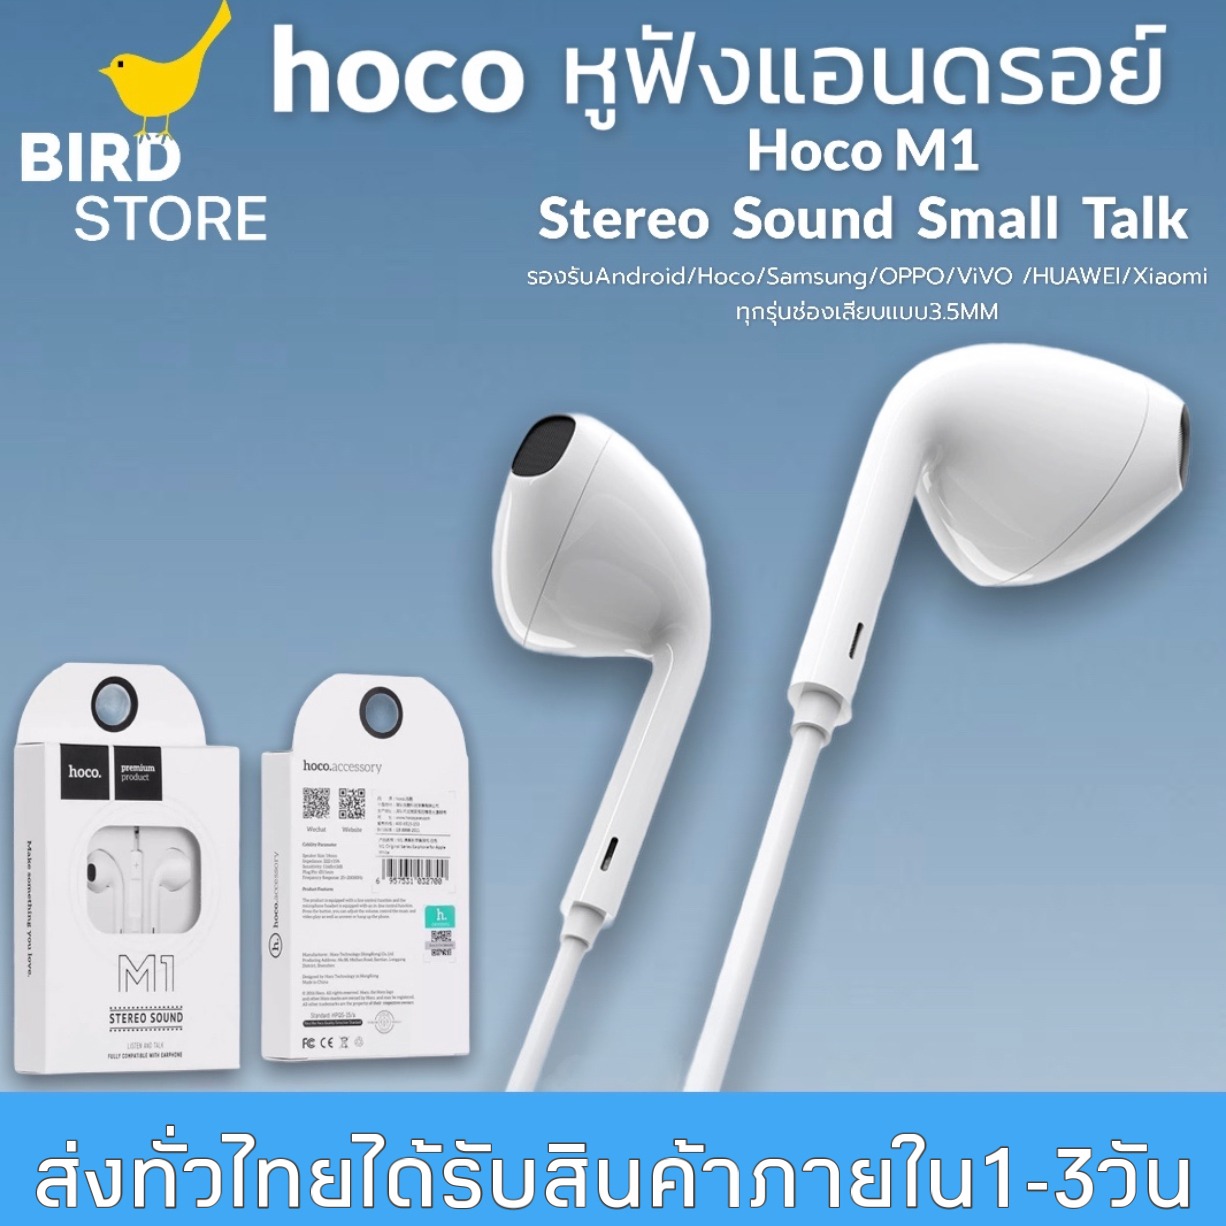 หูฟังHoco M1 Stereo Sound หูฟังสำหรับไอโฟน Aux 3.5 mm ของแท้ 100% สามารถใช้งานร่วมกับสมาร์ทโฟน, แท็บเล็ต BY BIRDSTORE